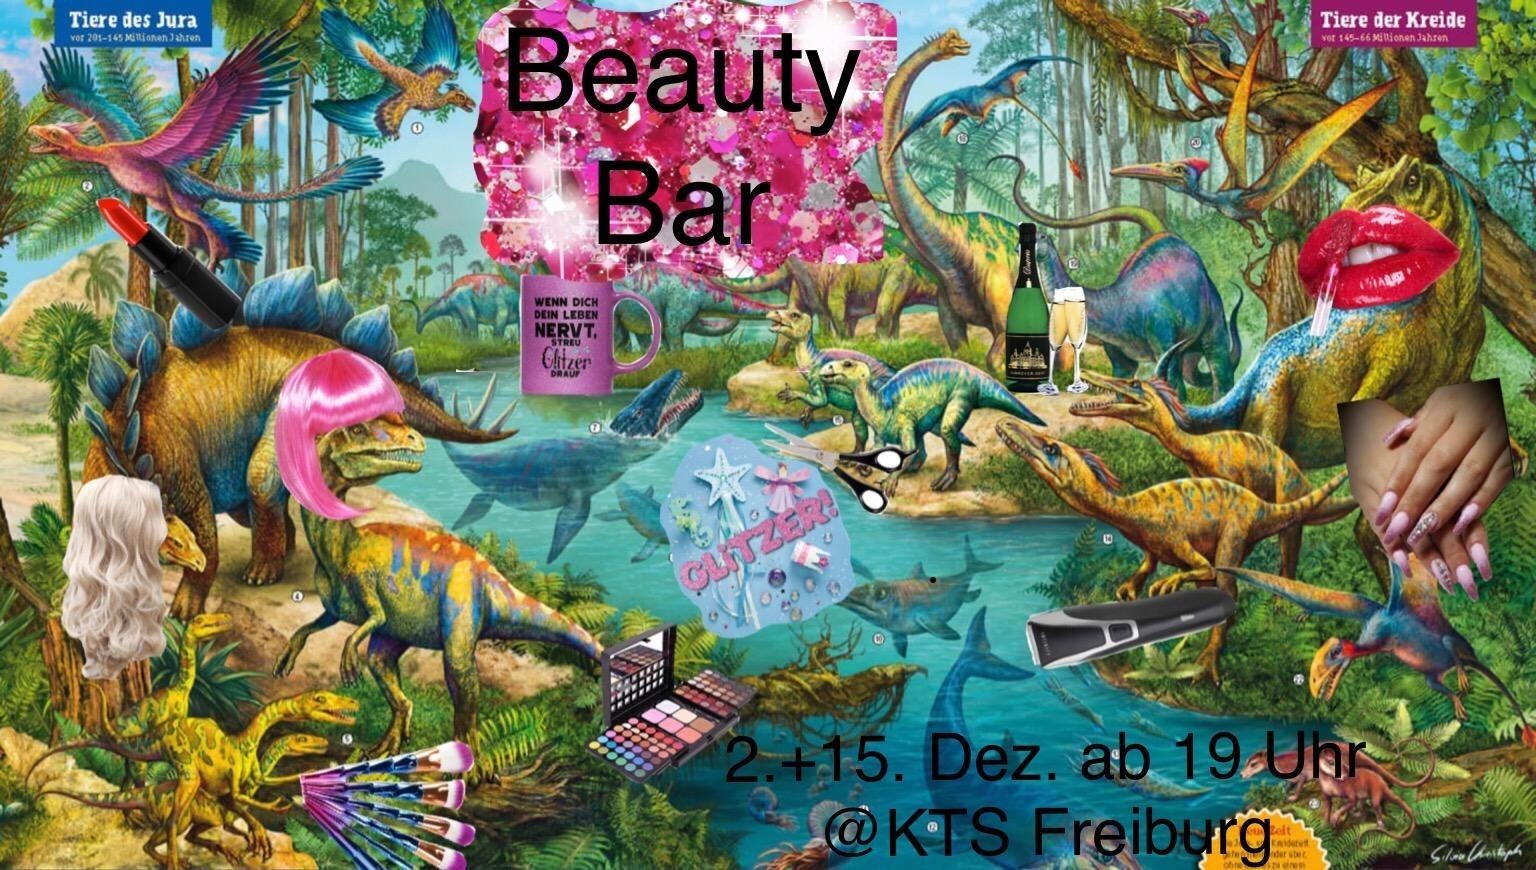 Werbebild für die BeautyBar mit vielen Dinos mit Perücken